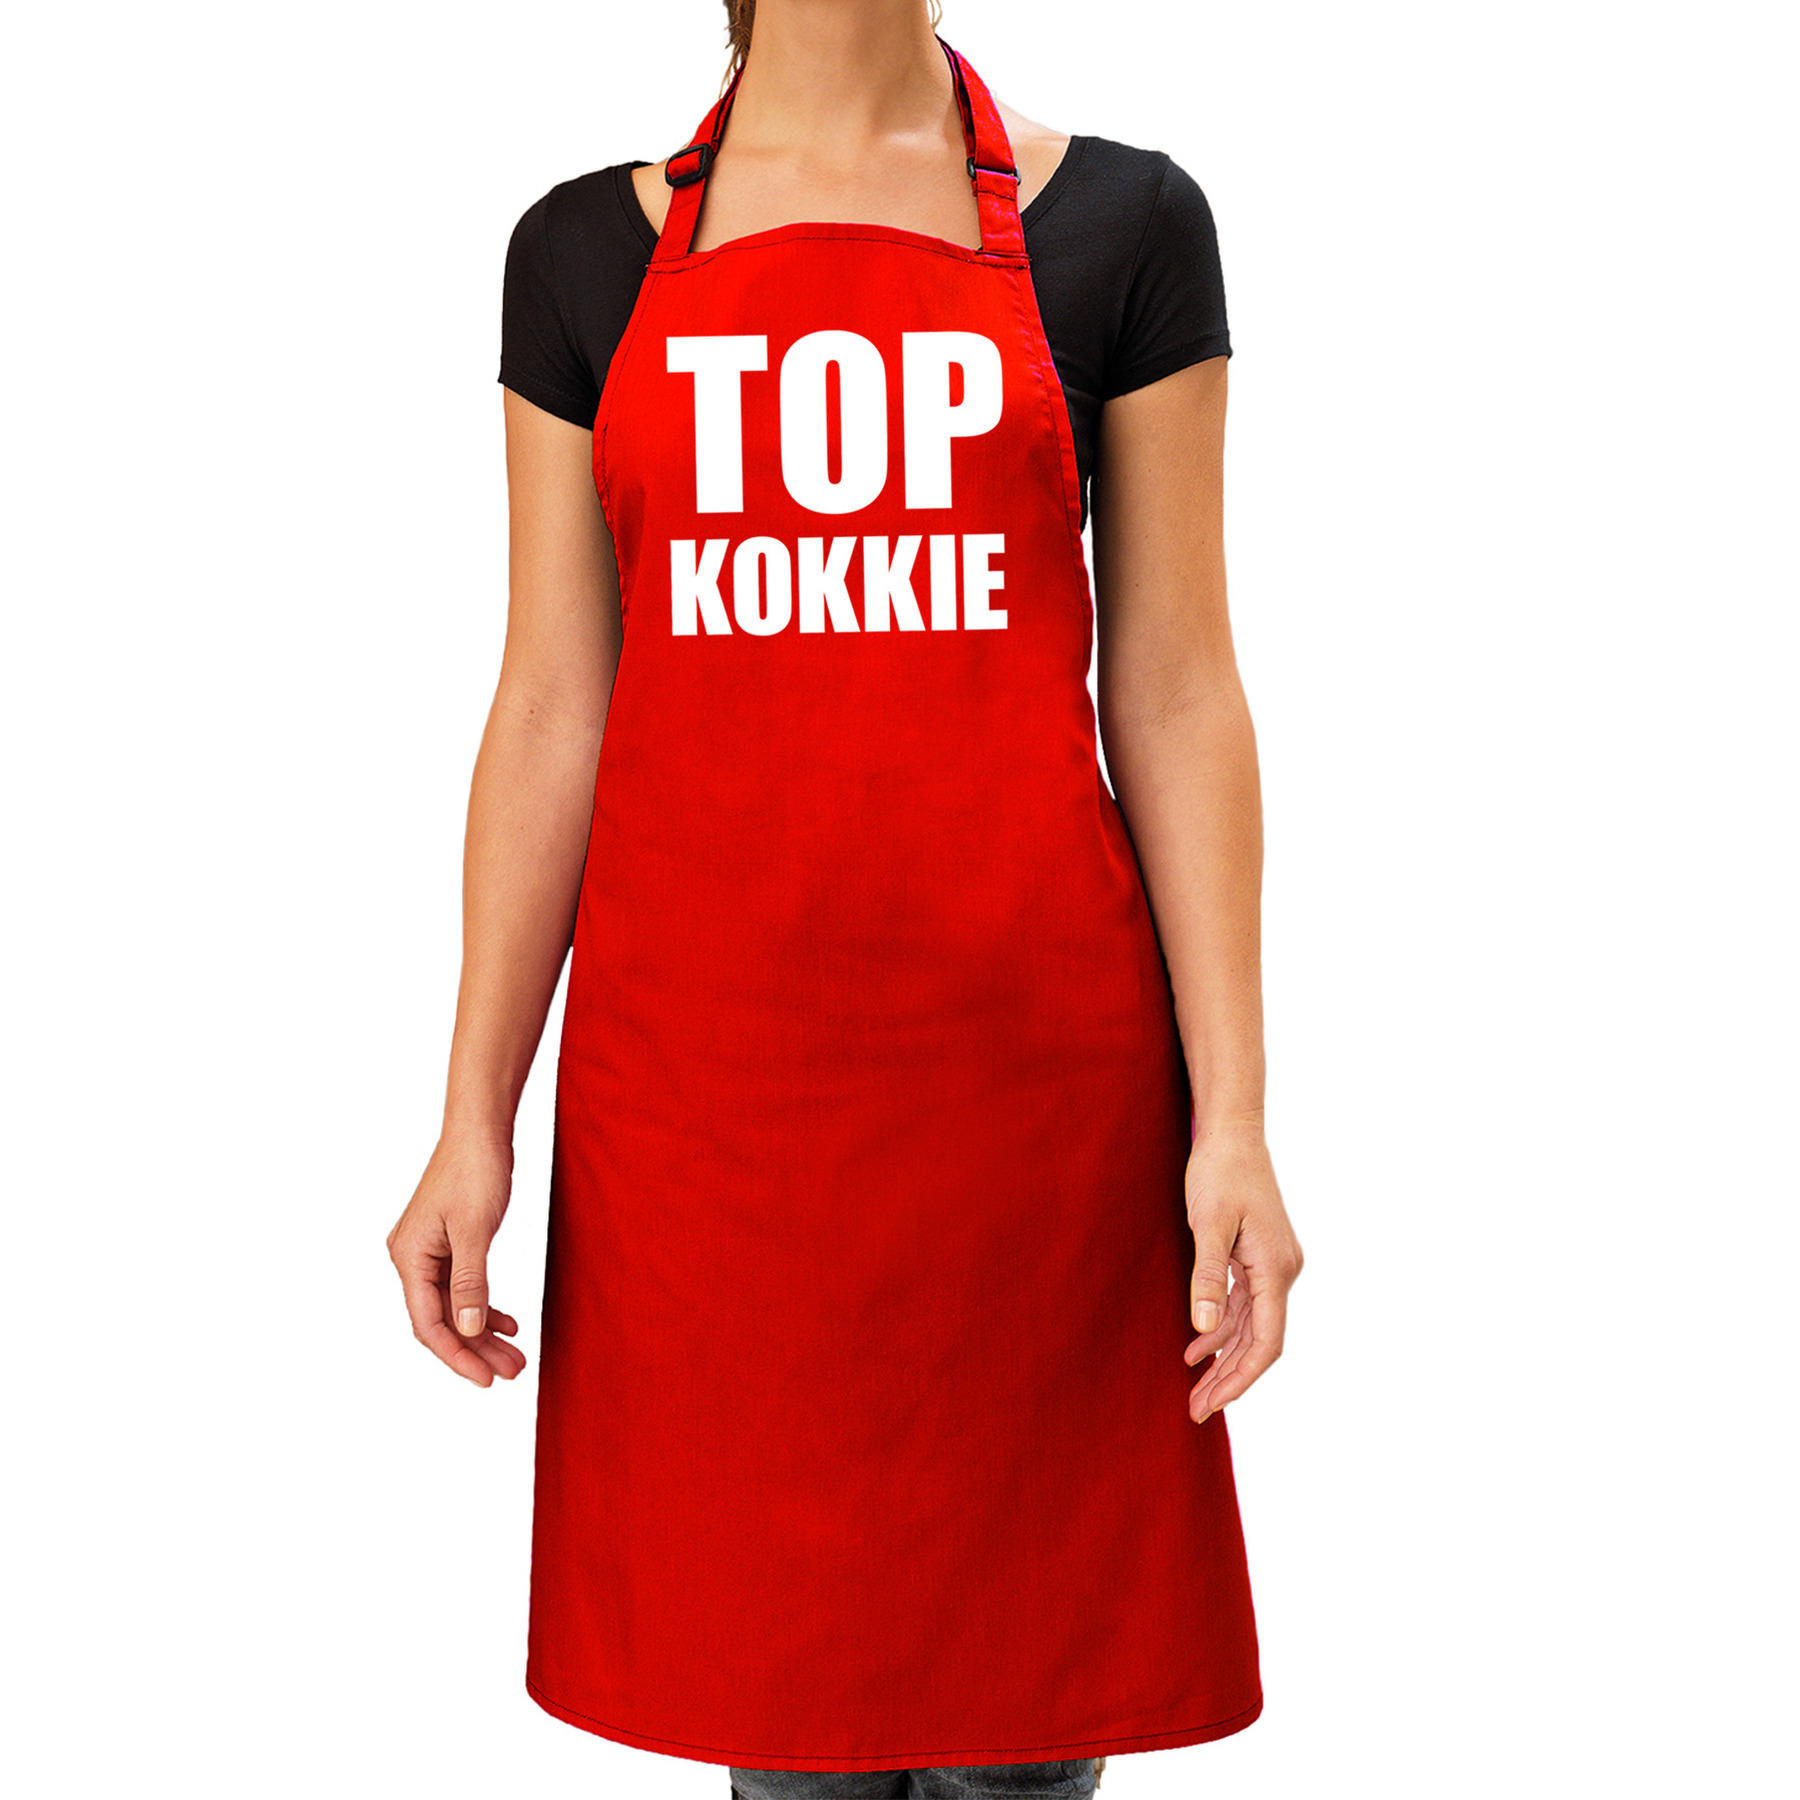 Top kokkie barbeque schort - keukenschort rood dames -